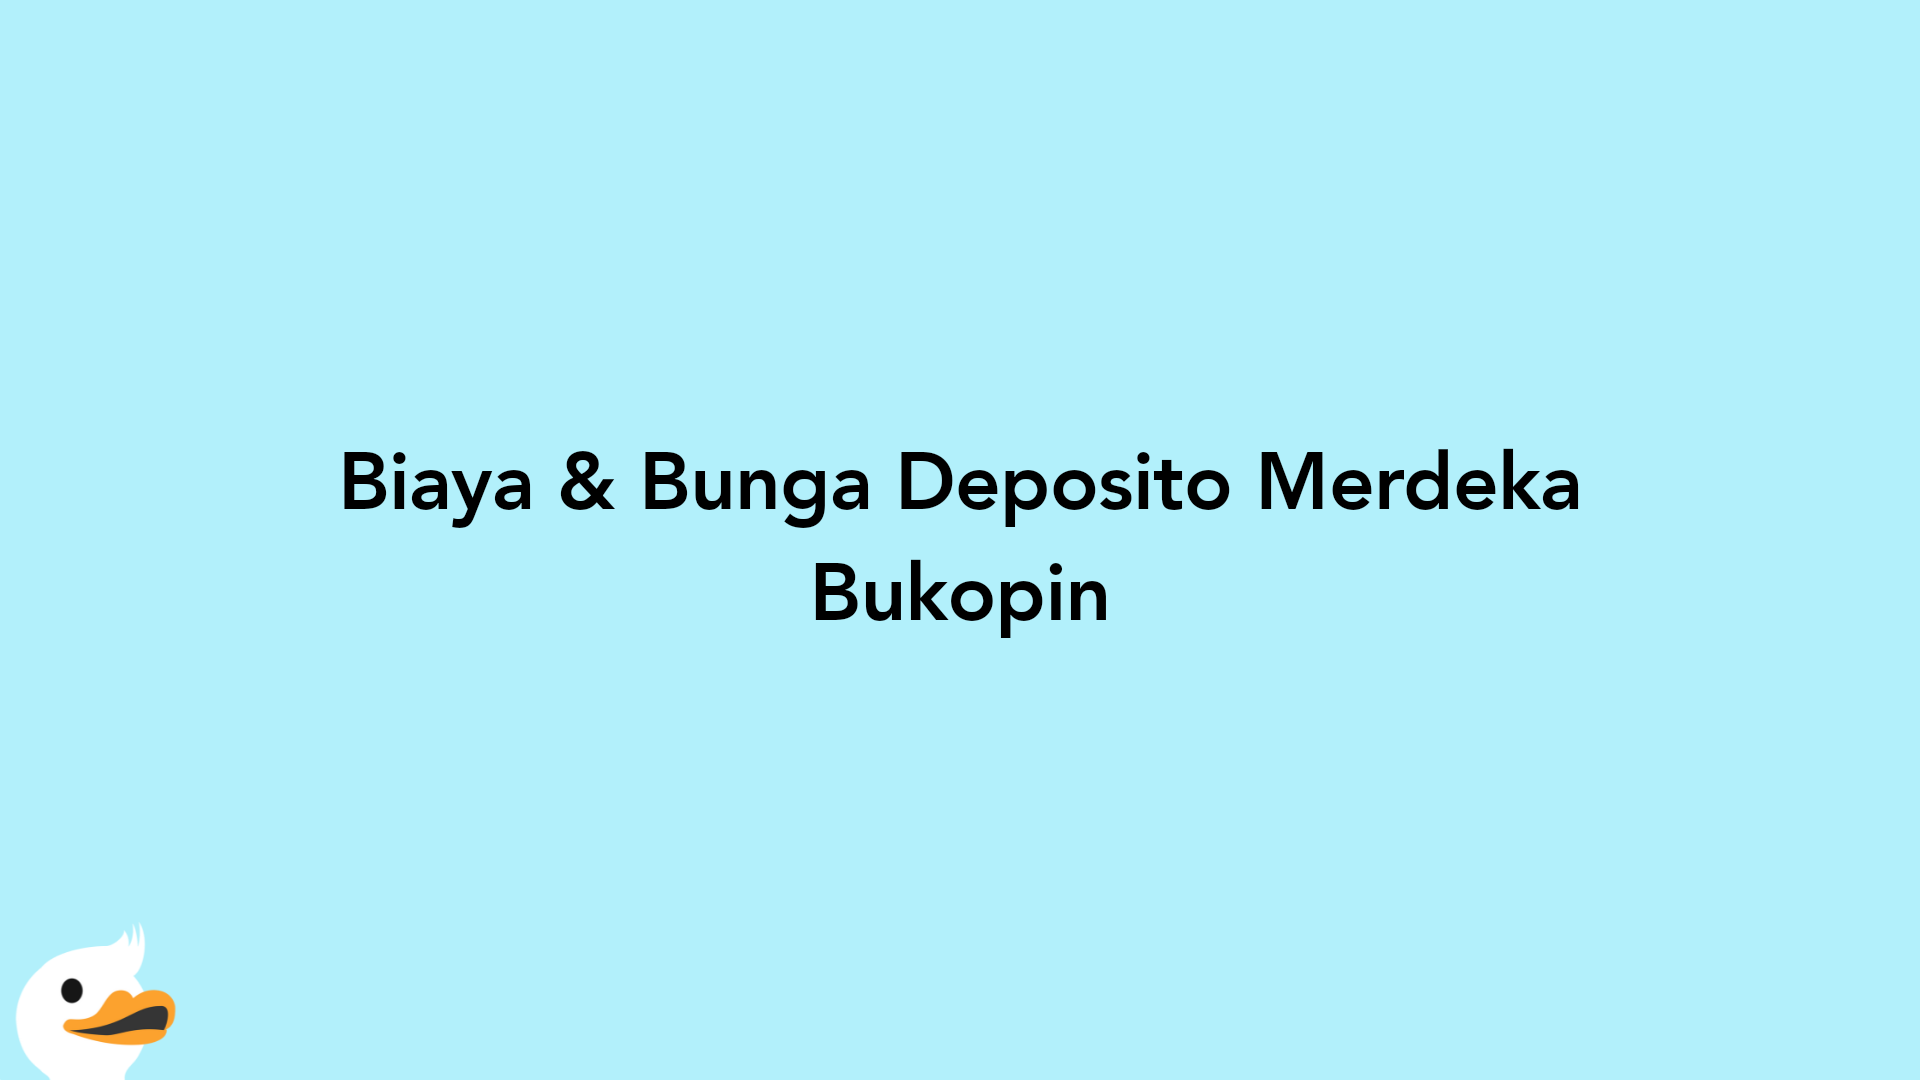 Biaya & Bunga Deposito Merdeka Bukopin